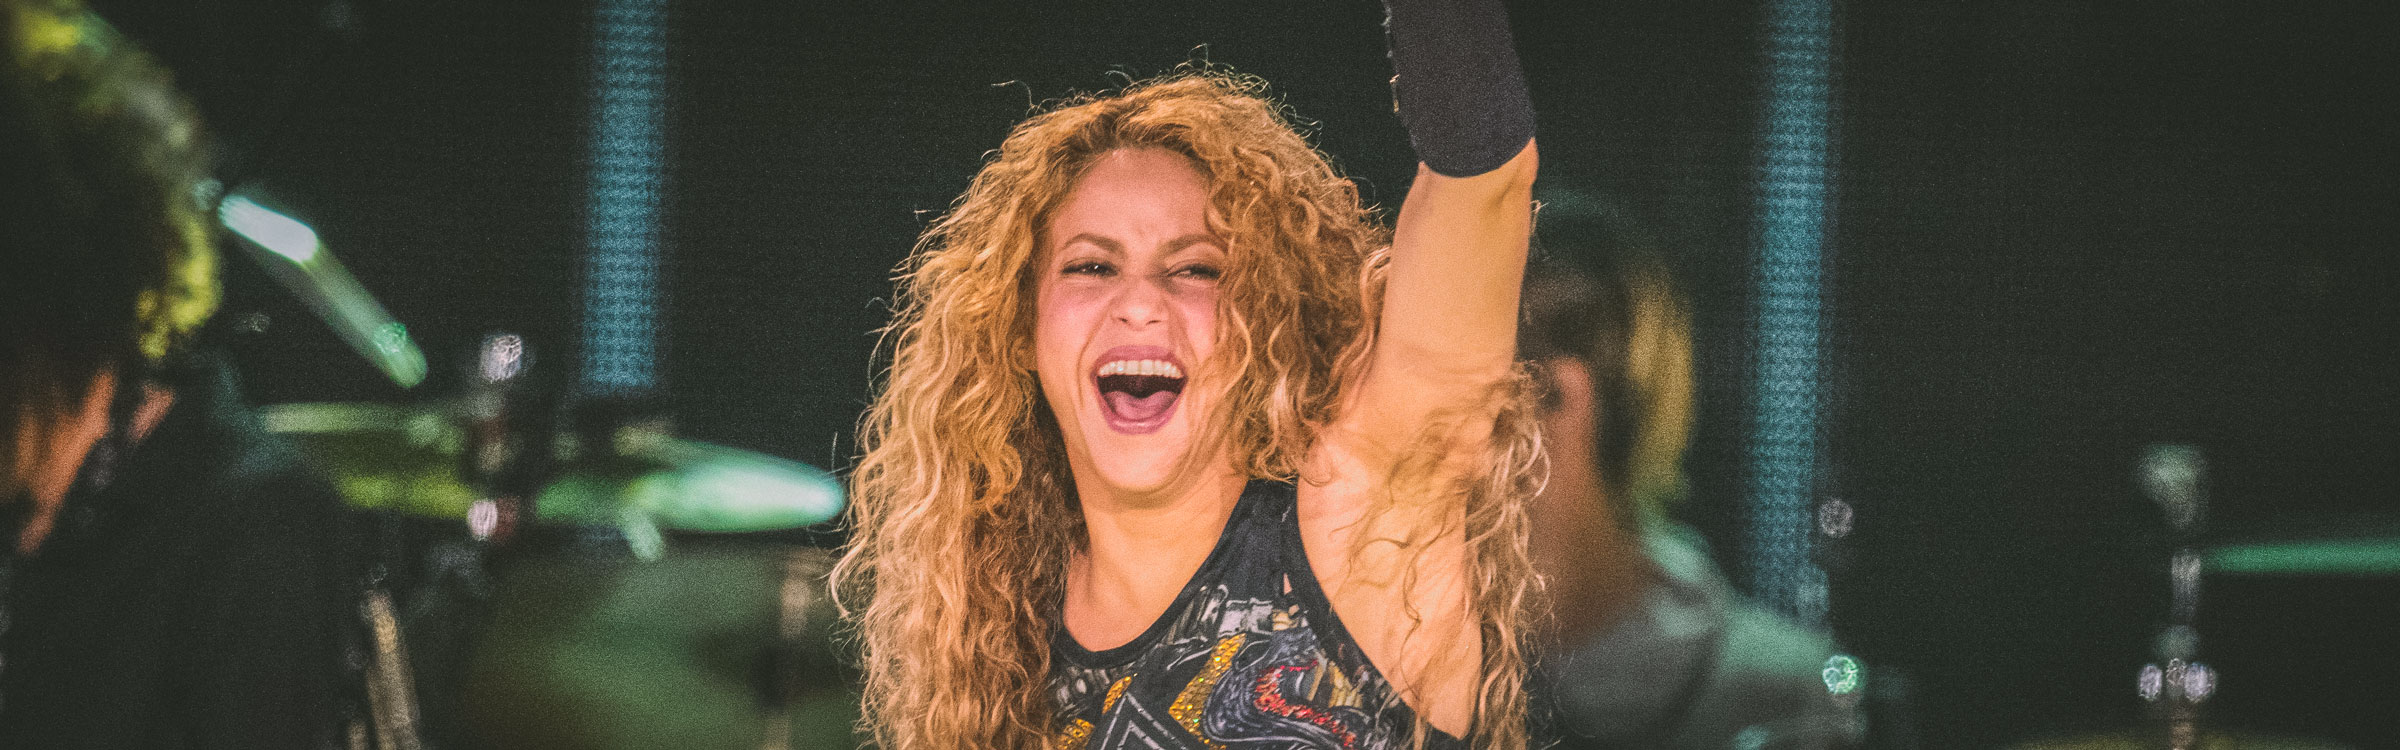 Shakira header